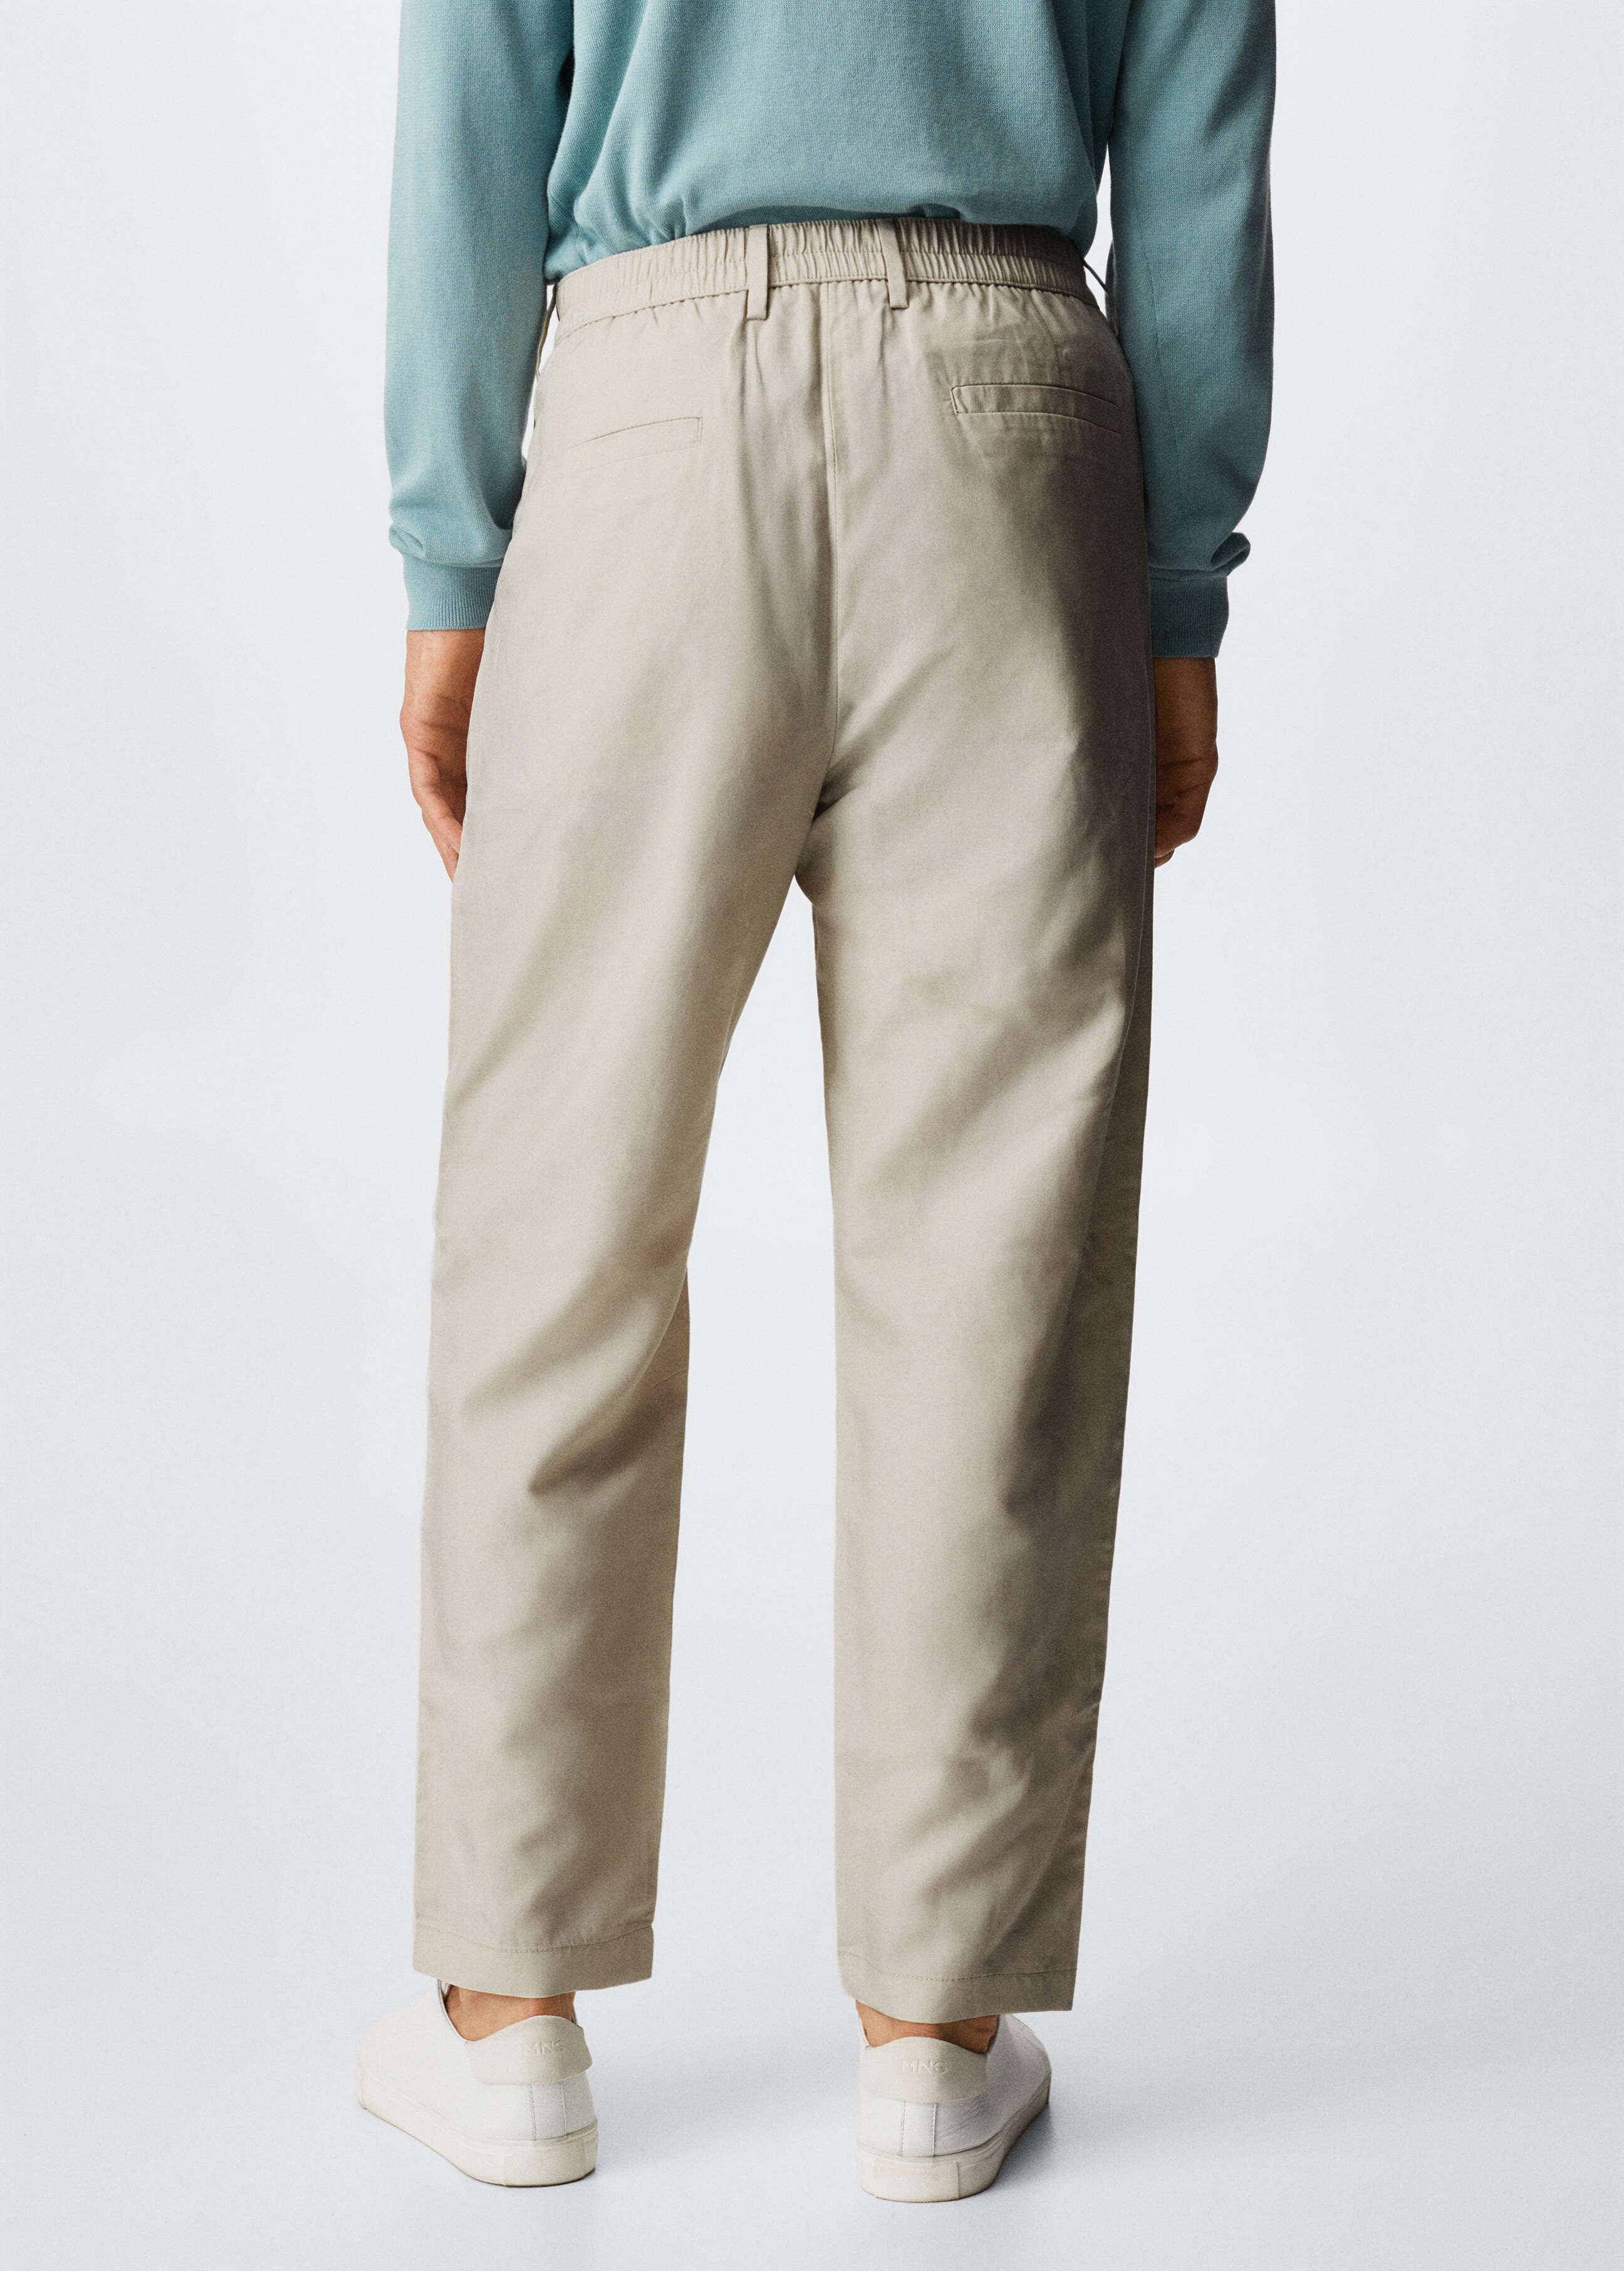 Pantalón lyocell lino pinzas - Reverso del artículo